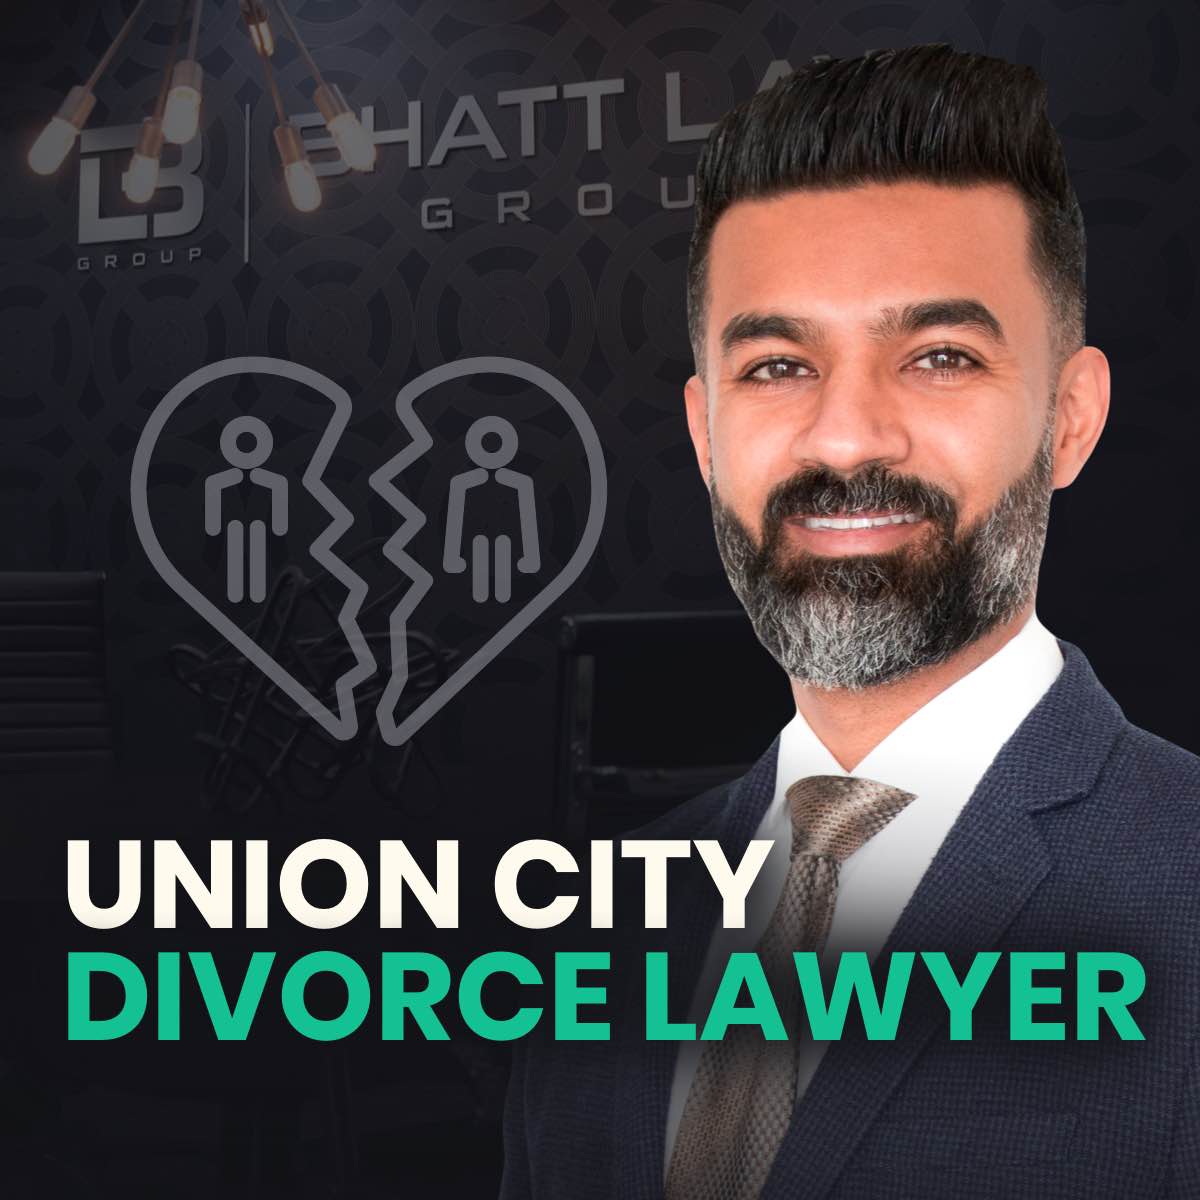 Union City Divorce Lawyer